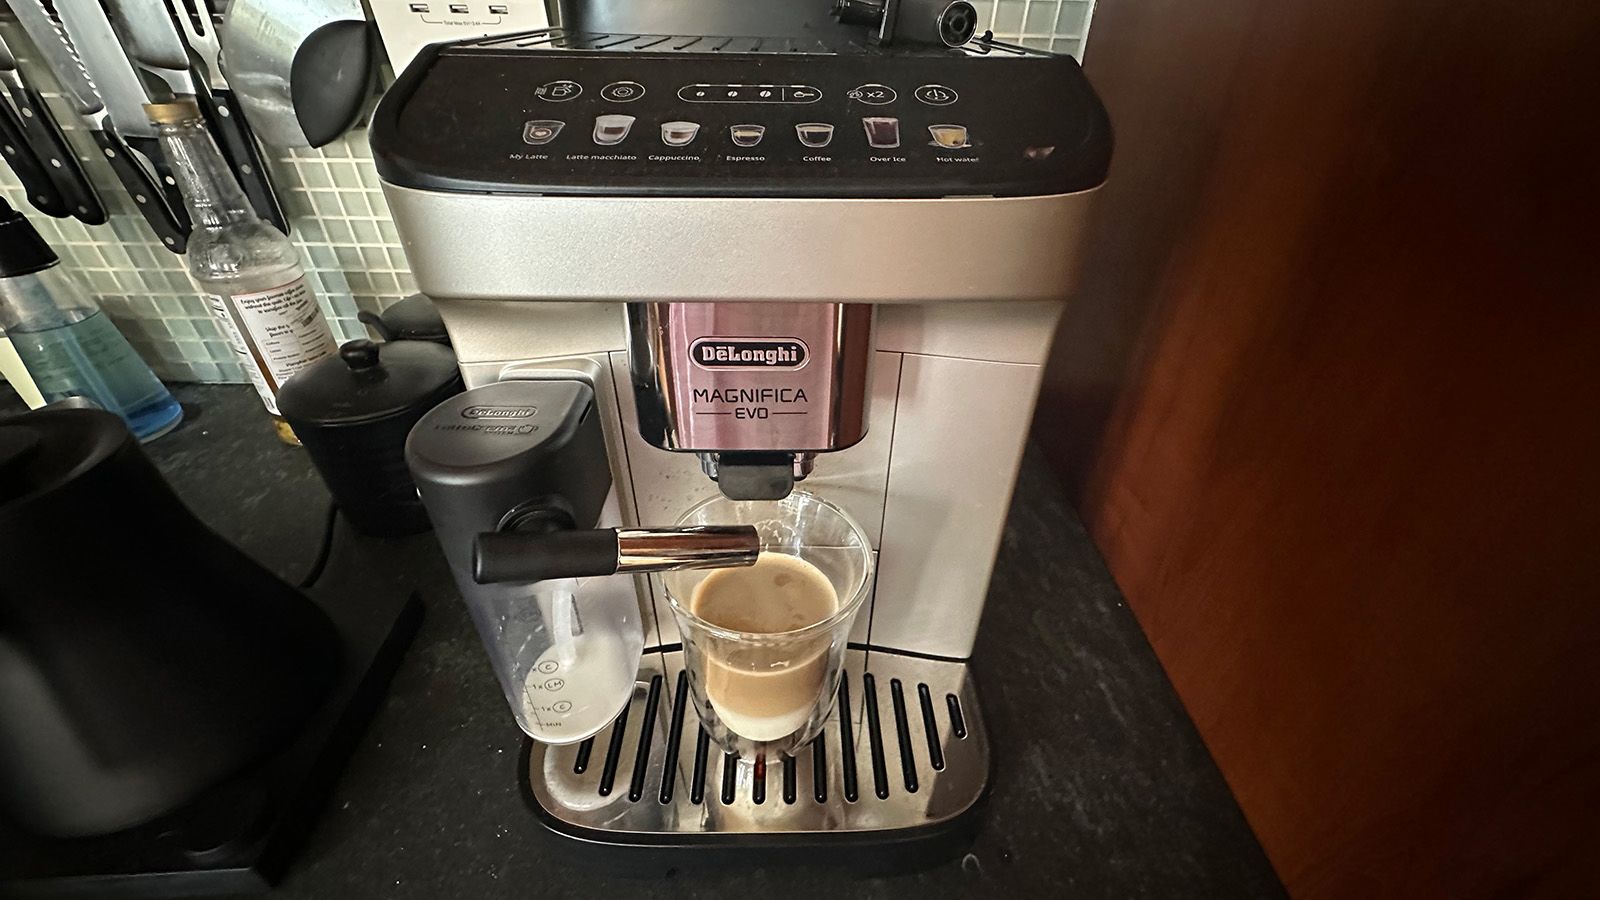 Delonghi All-in-One Coffee & Espresso Maker, Cappuccino, Latte